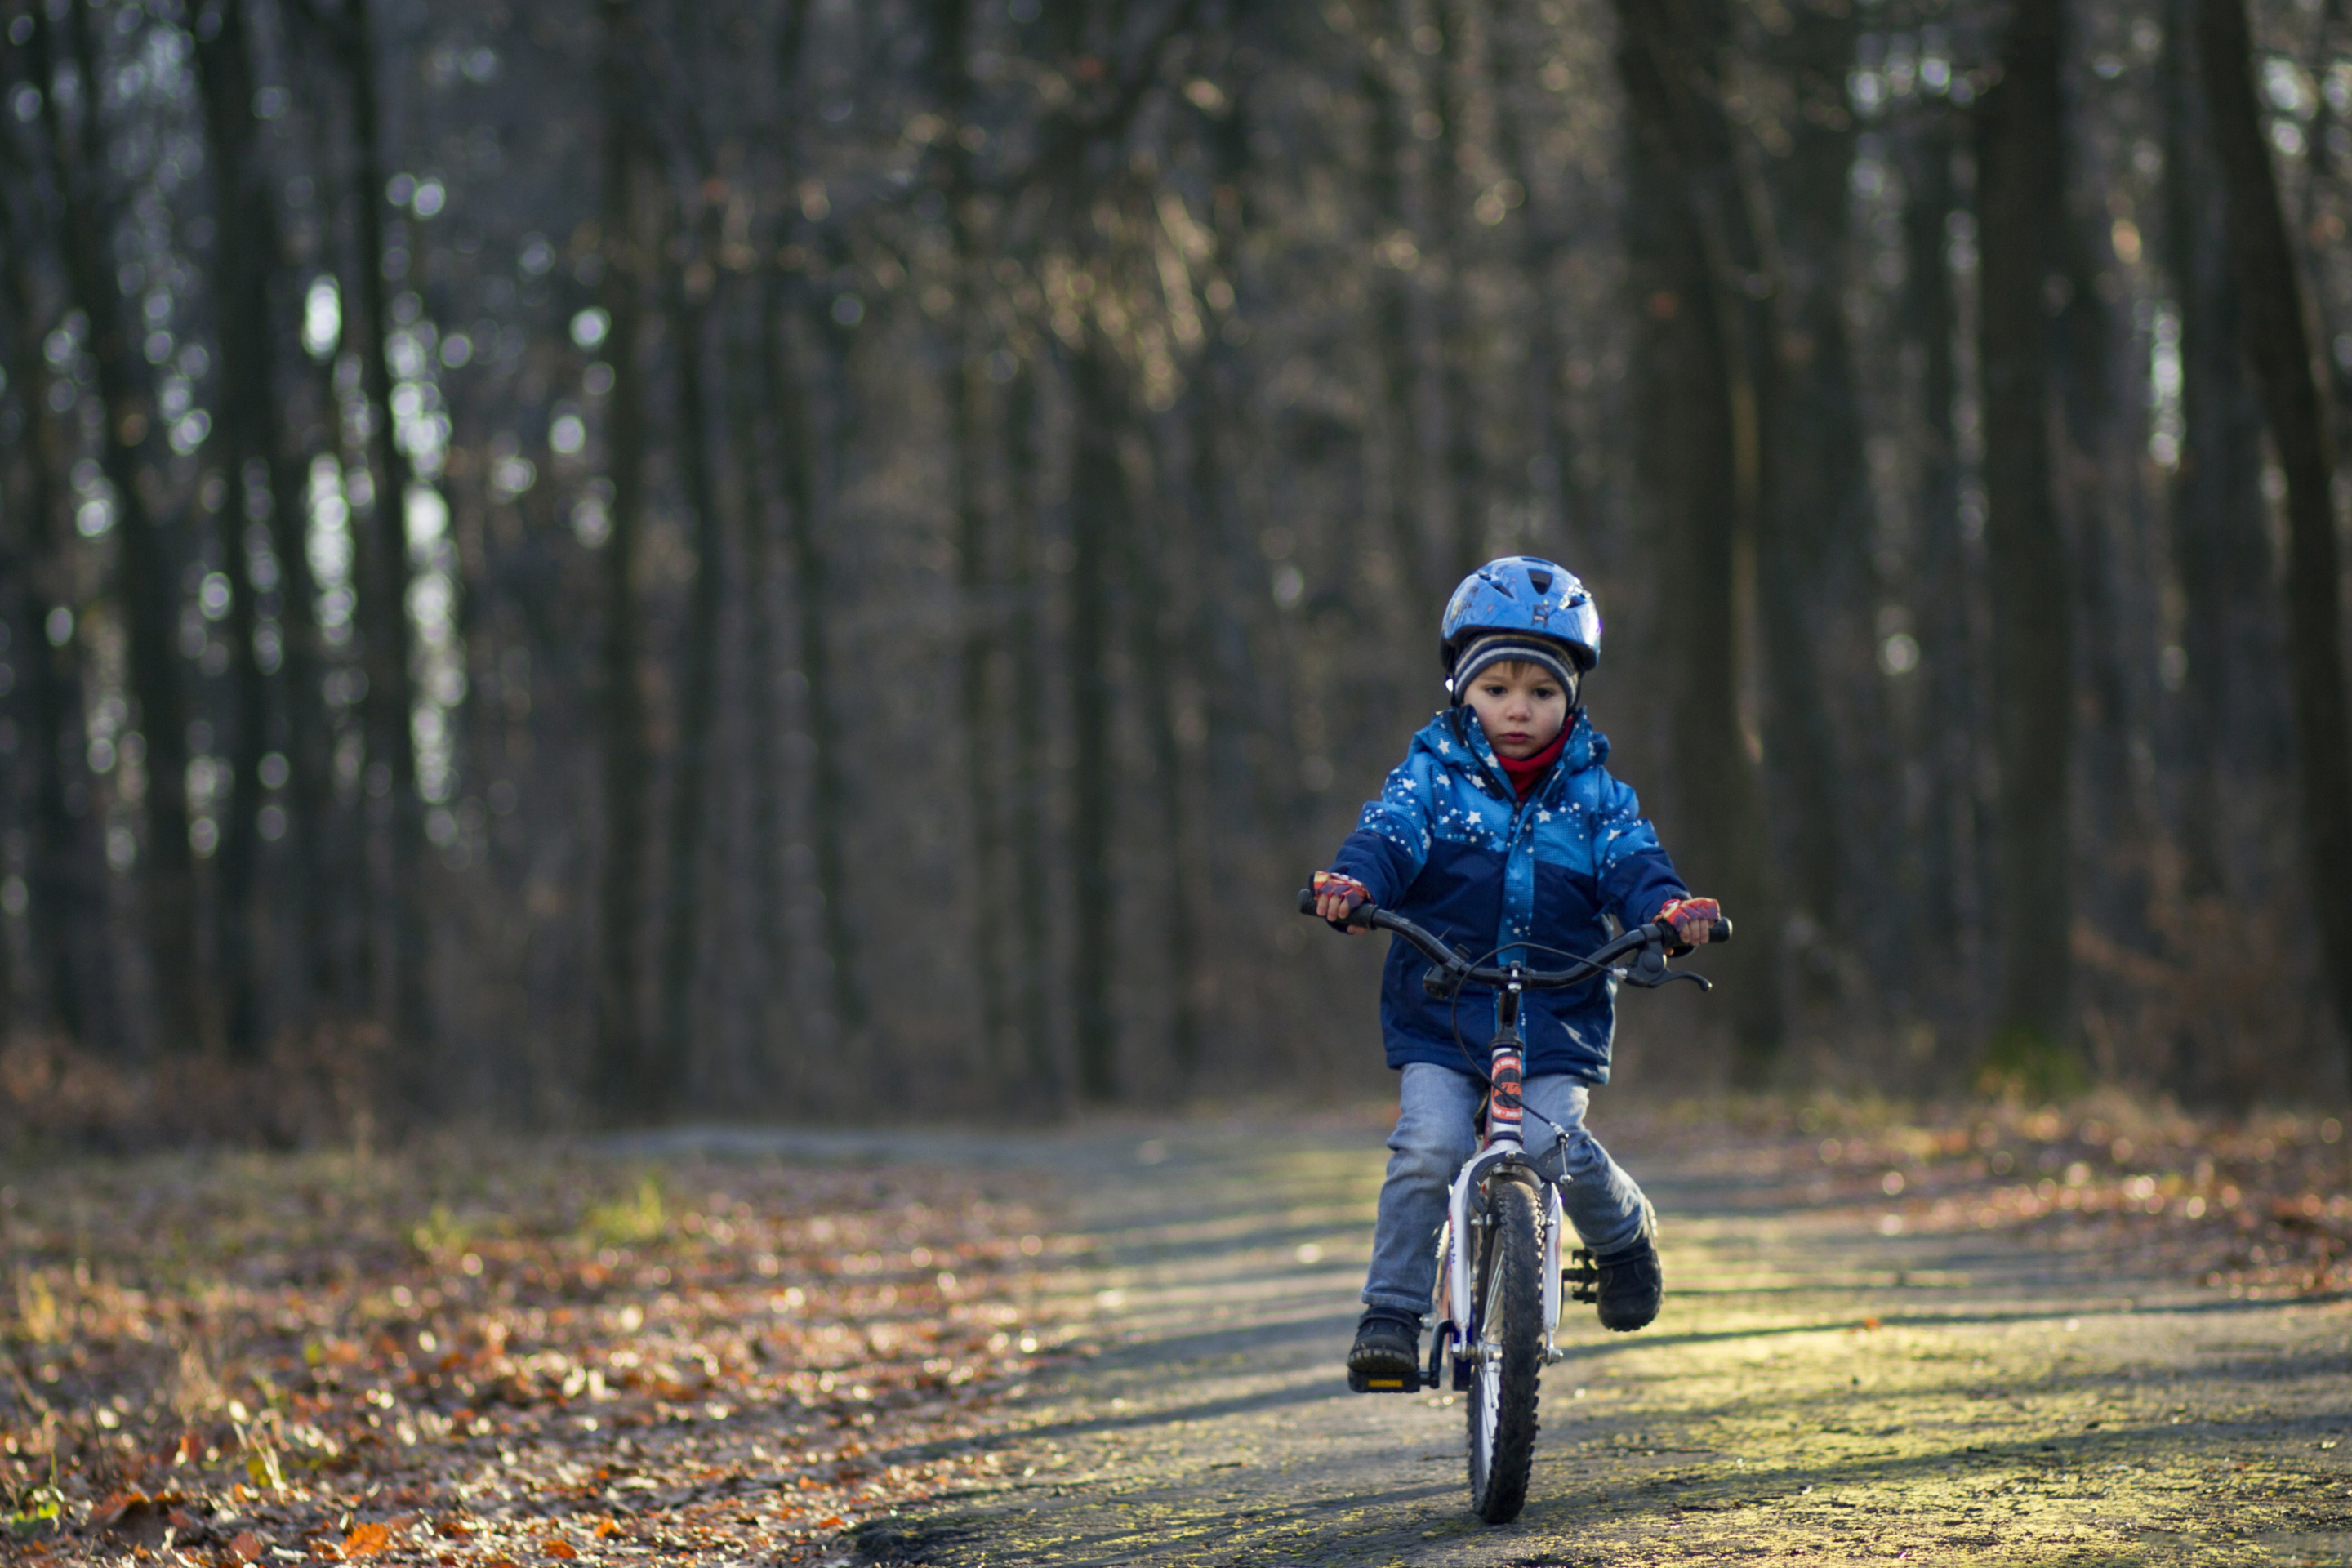 Das Little Boy Riding Bicycle Wallpaper 2880x1920